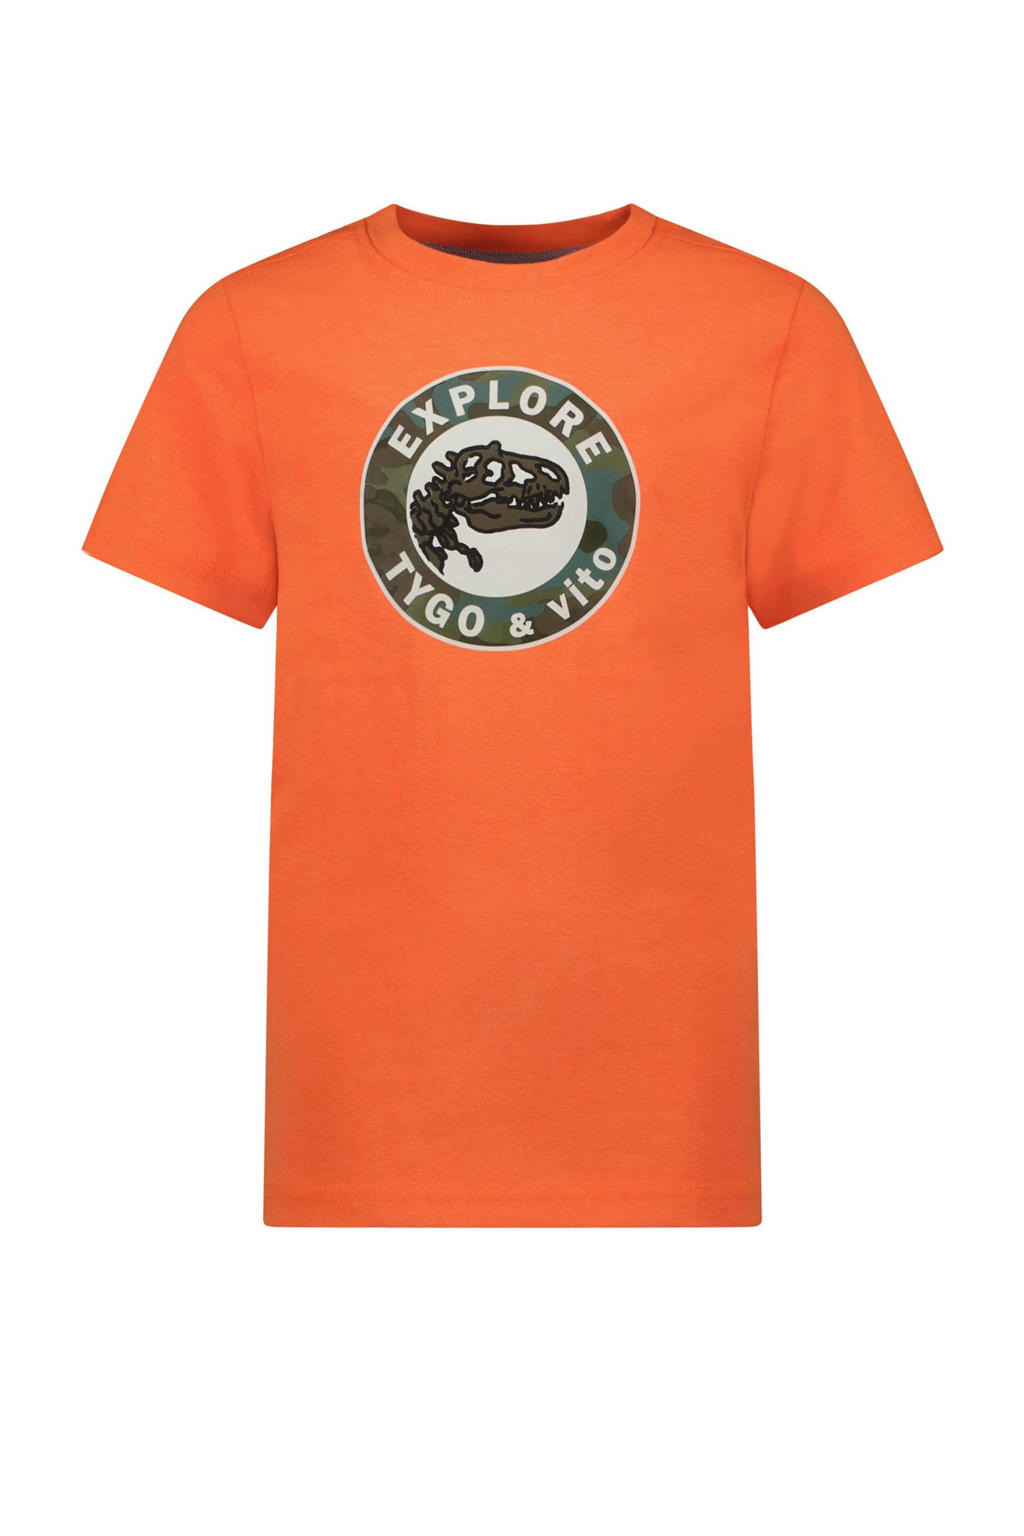 Oranje jongens TYGO & vito T-shirt van polyester met korte mouwen en ronde hals